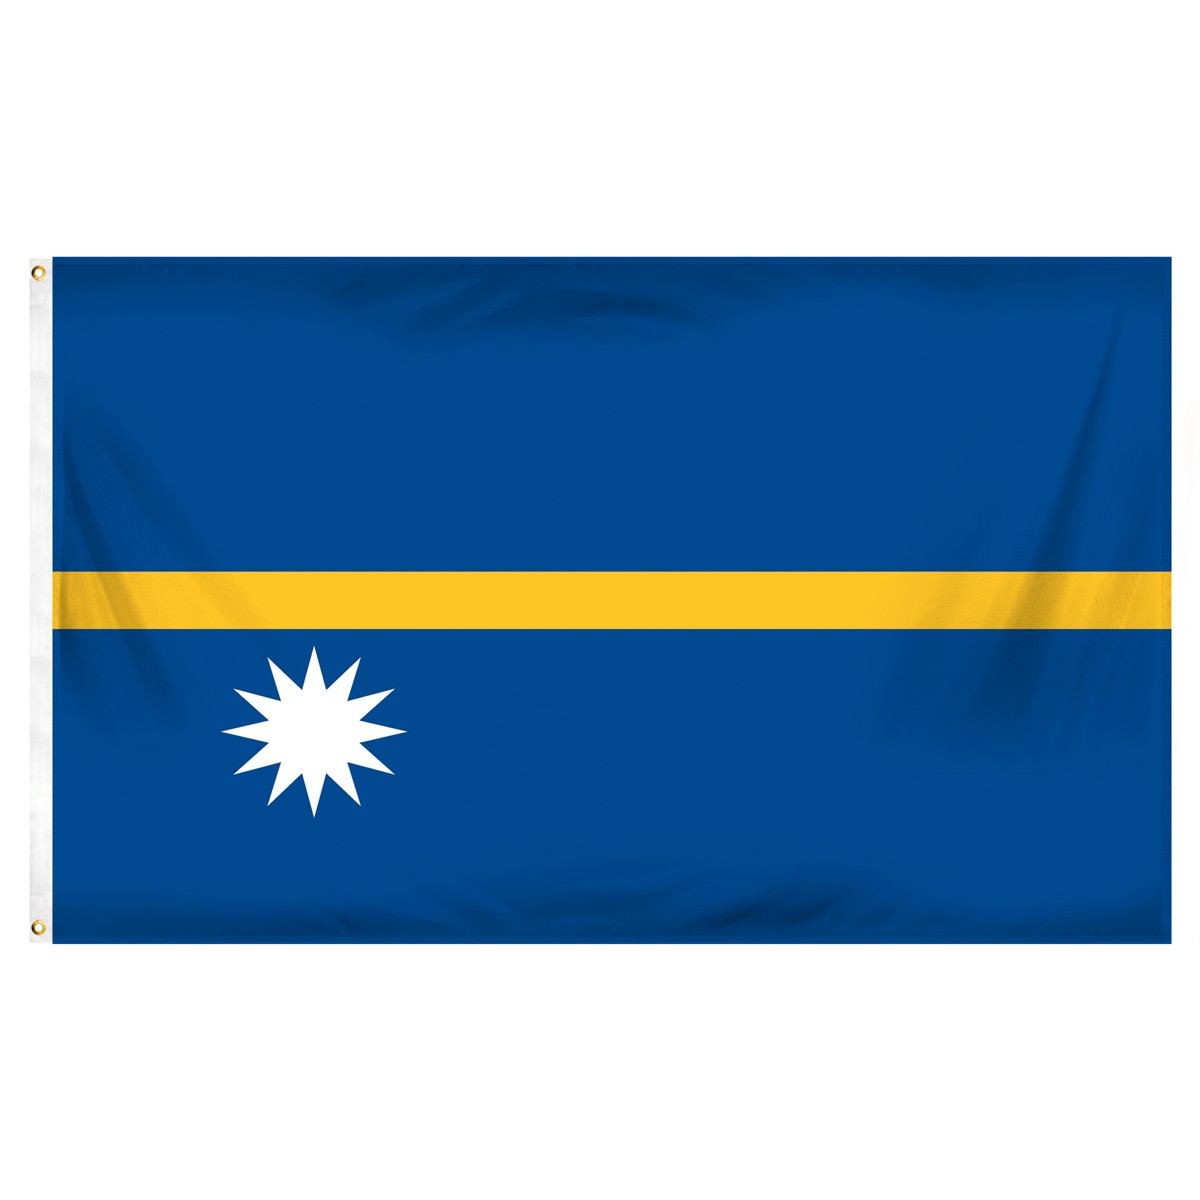 Nauru Building Pennants and Flags